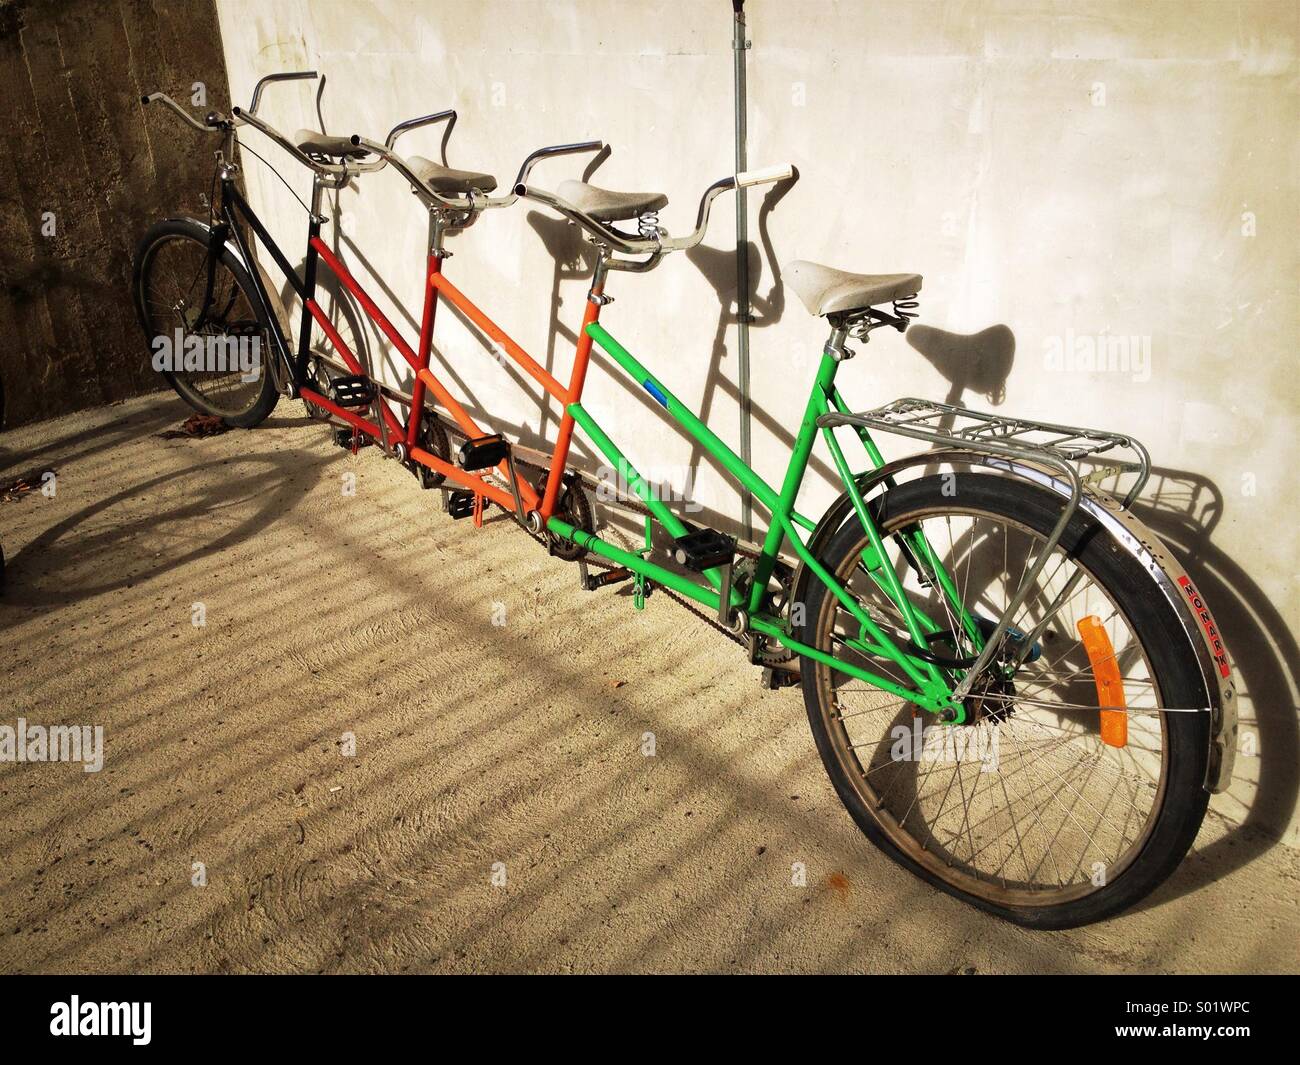 Quattro seat bicicletta, quadracycle. Quadriciclo. Foto Stock